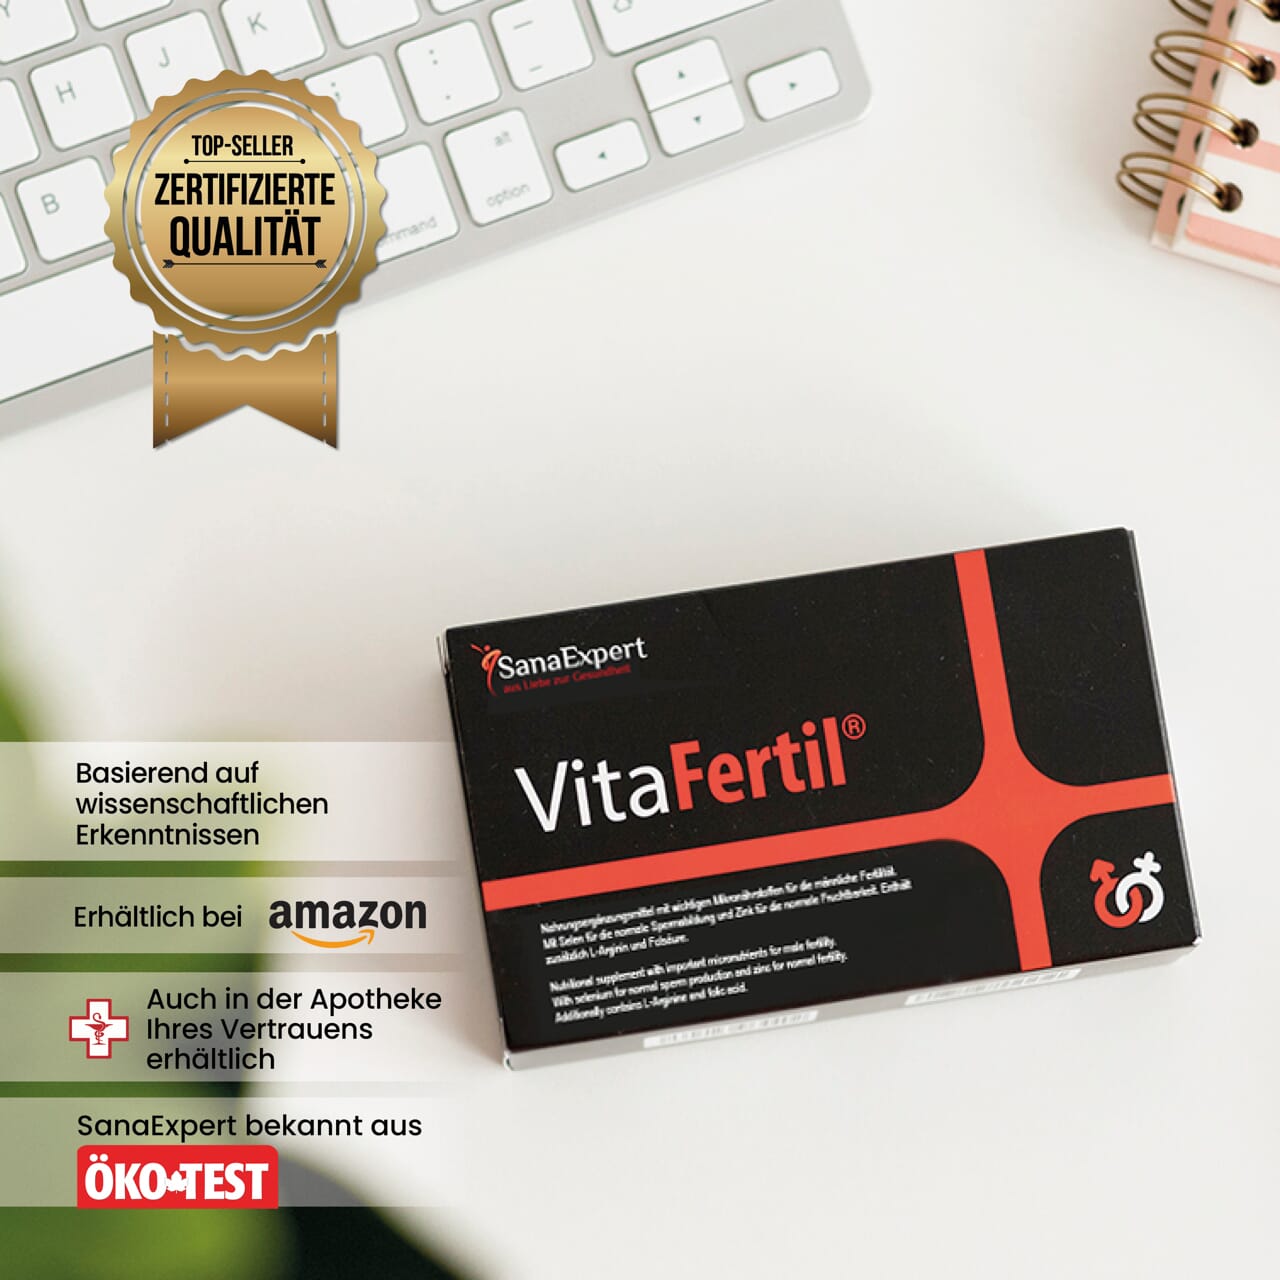 Packung VitaFertile vor einer Tastatur, das Zertifikat für Qualität prominent im Vordergrund, auf weißem Untergrund.